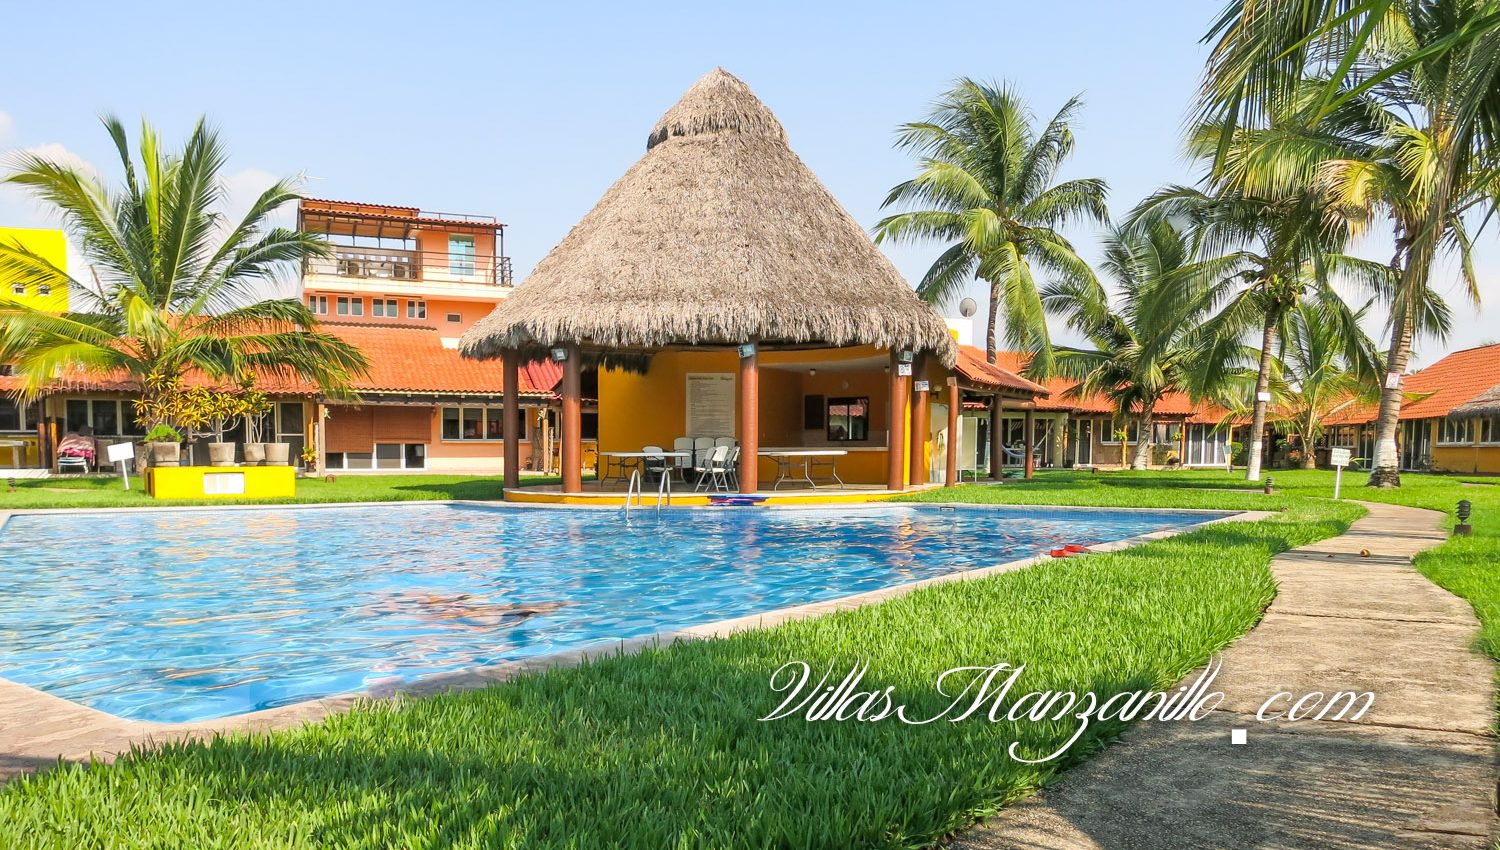 Casa Sol – Villas Manzanillo – Especialistas en Rentas de Casas  Departamentos y Villas en Manzanillo Colima Mexico